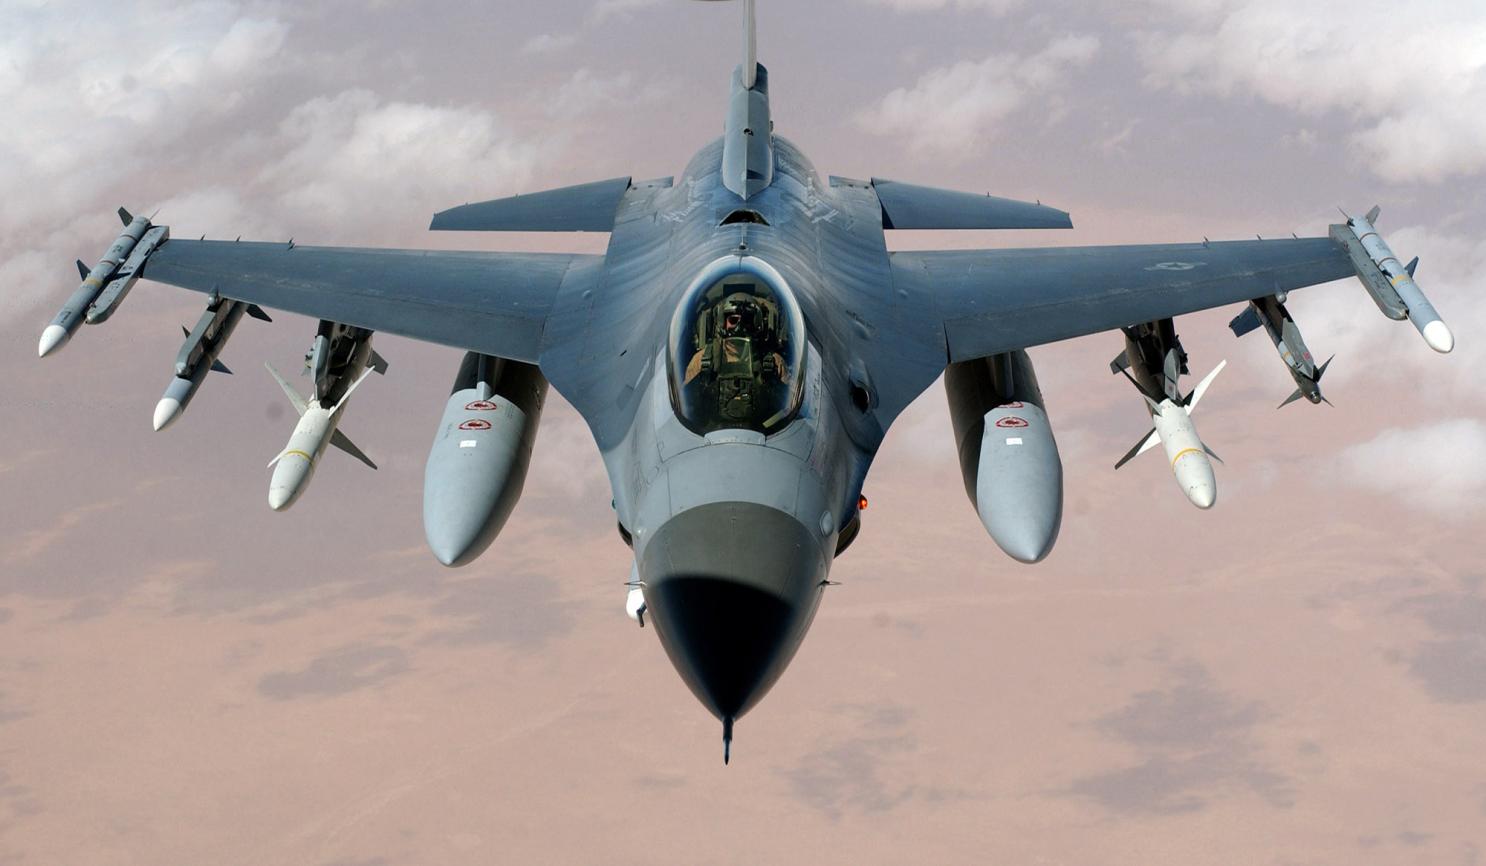 Comparison Of Dassault Rafale VS F-16 Fighting Falcon